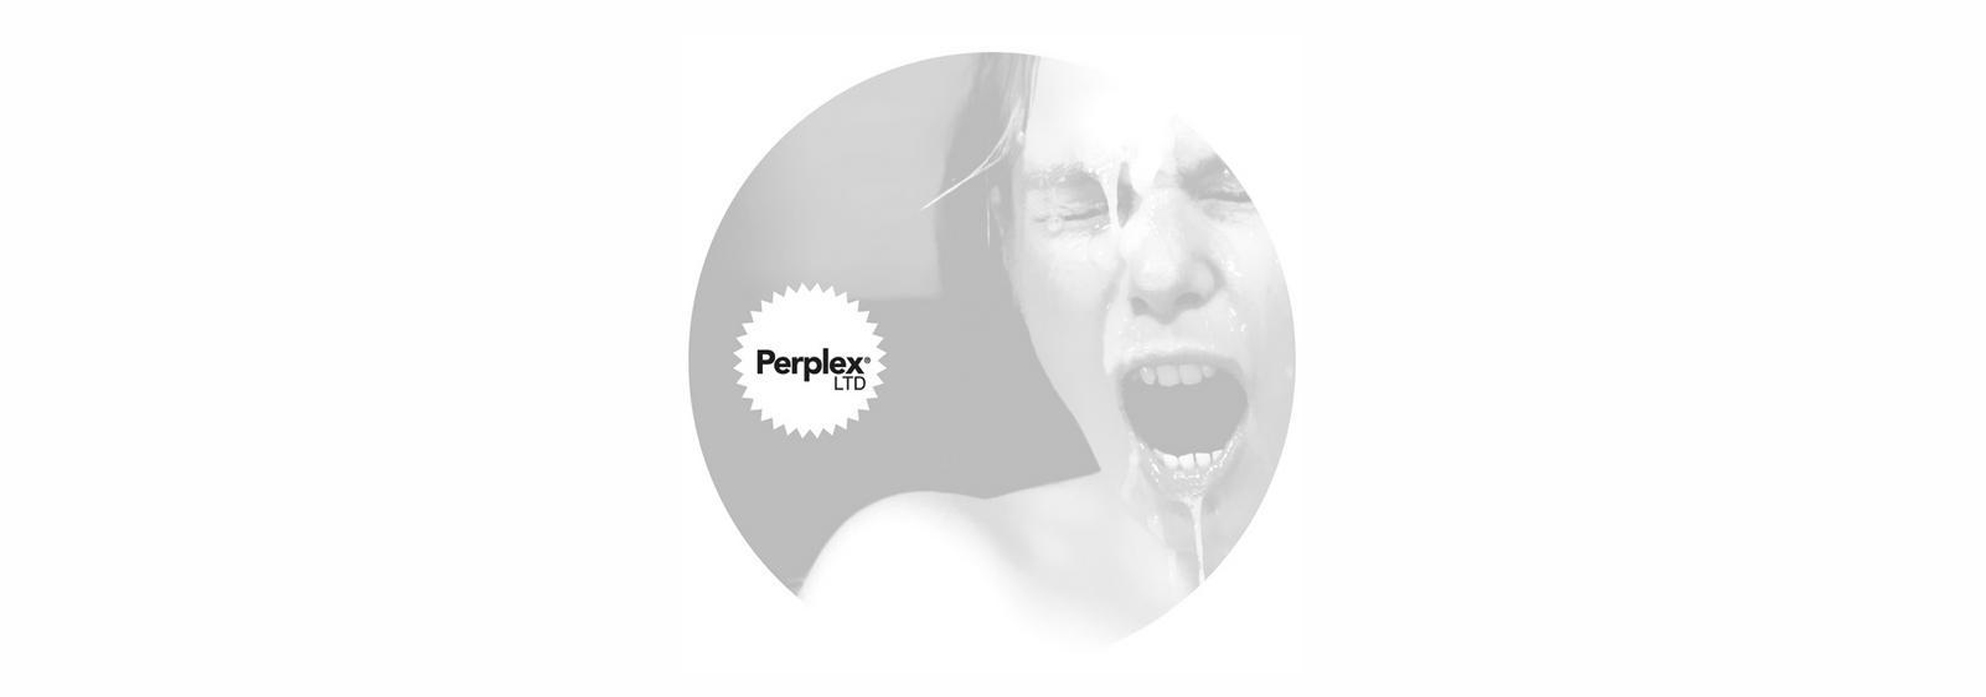 Lire la suite à propos de l’article Perplex recordings : Come in your face